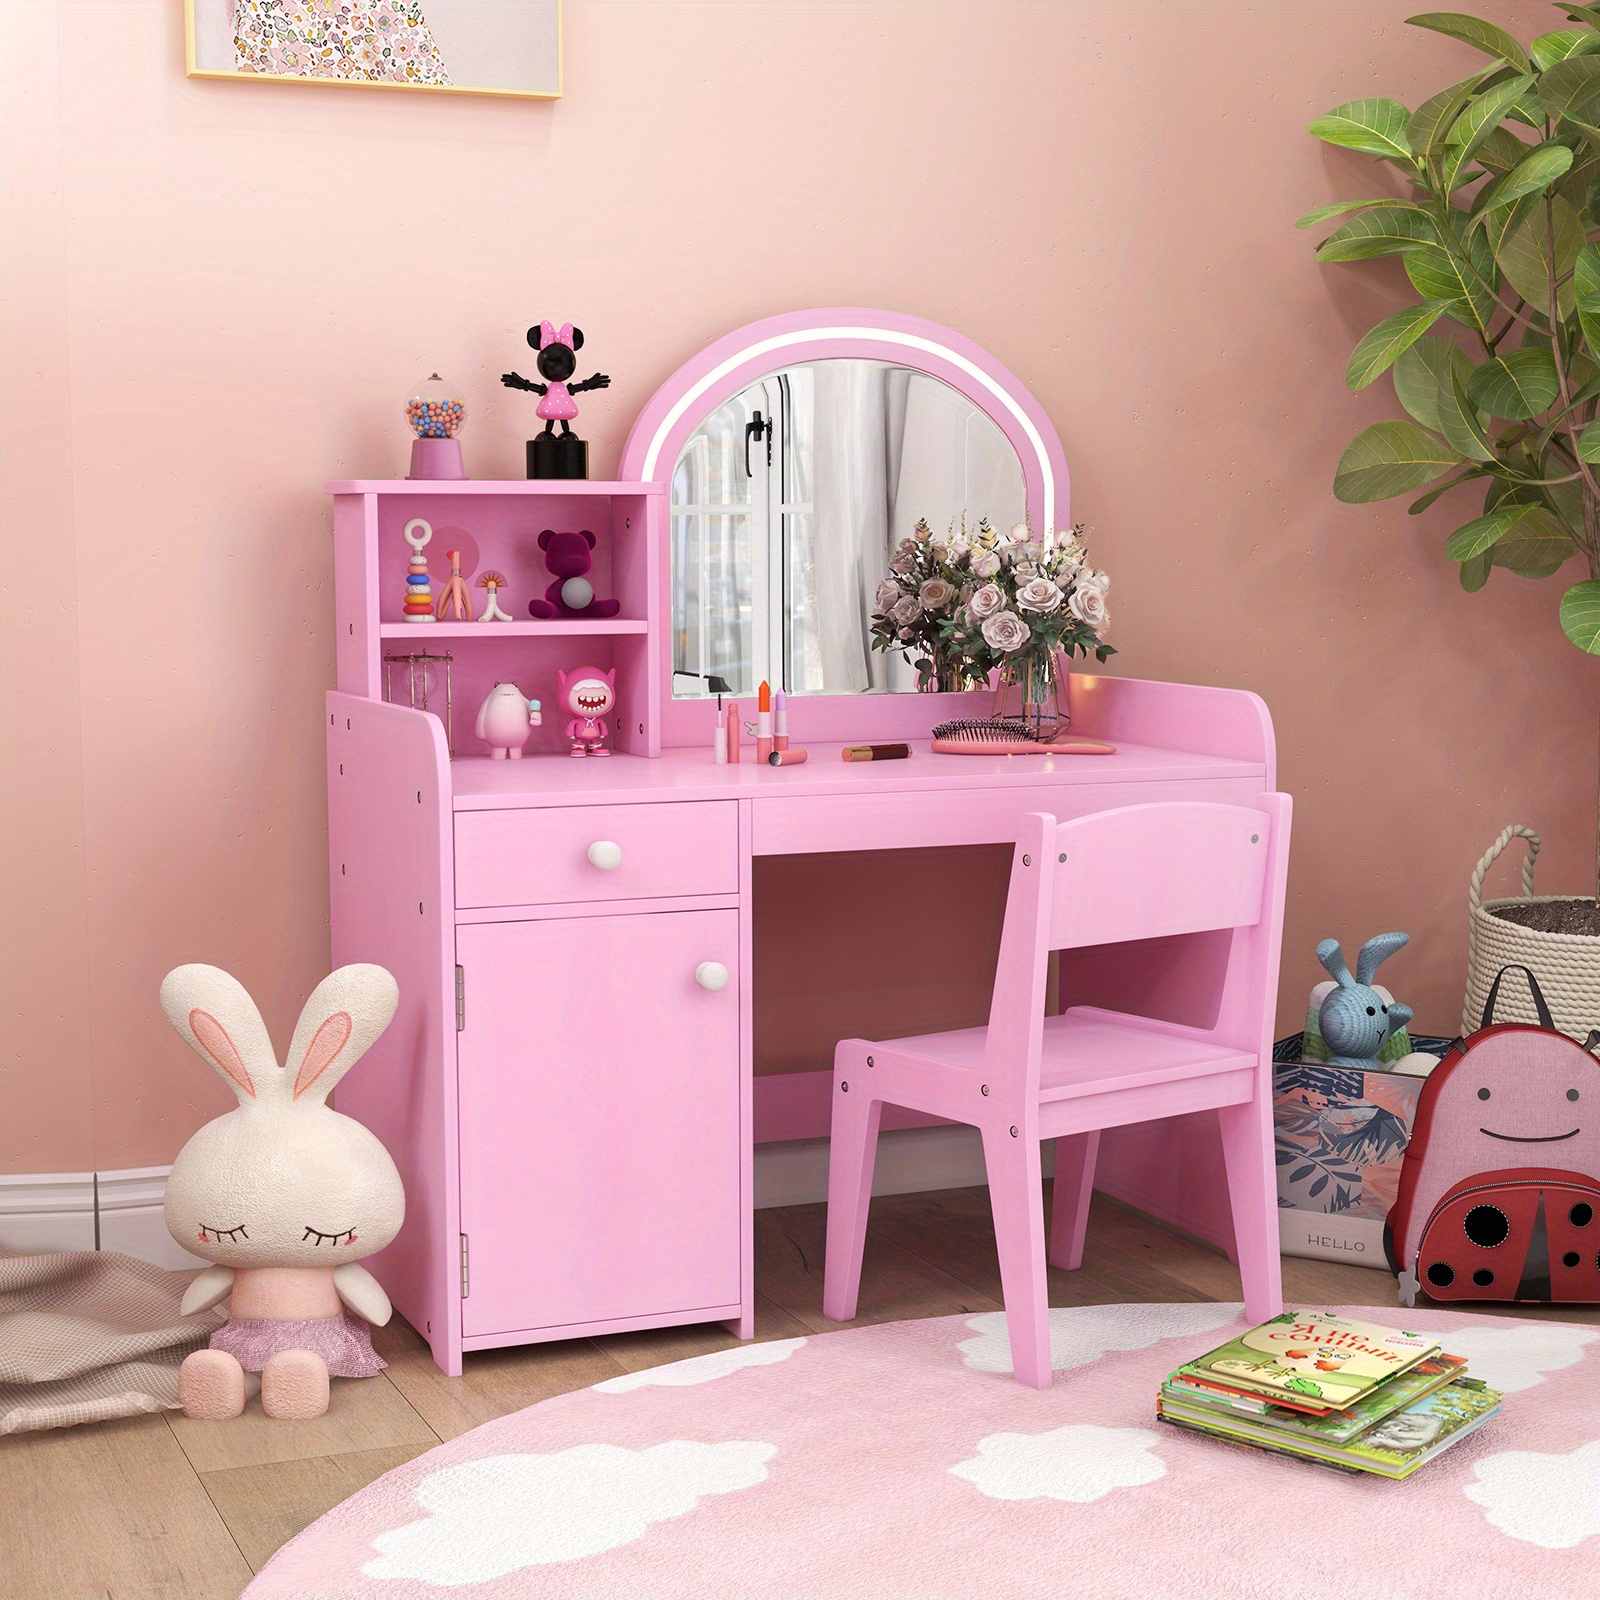 

Safstar Kid Vanity Table Chair Set 2-color Led Lights Large Drawer Shelf Cabinet Pink